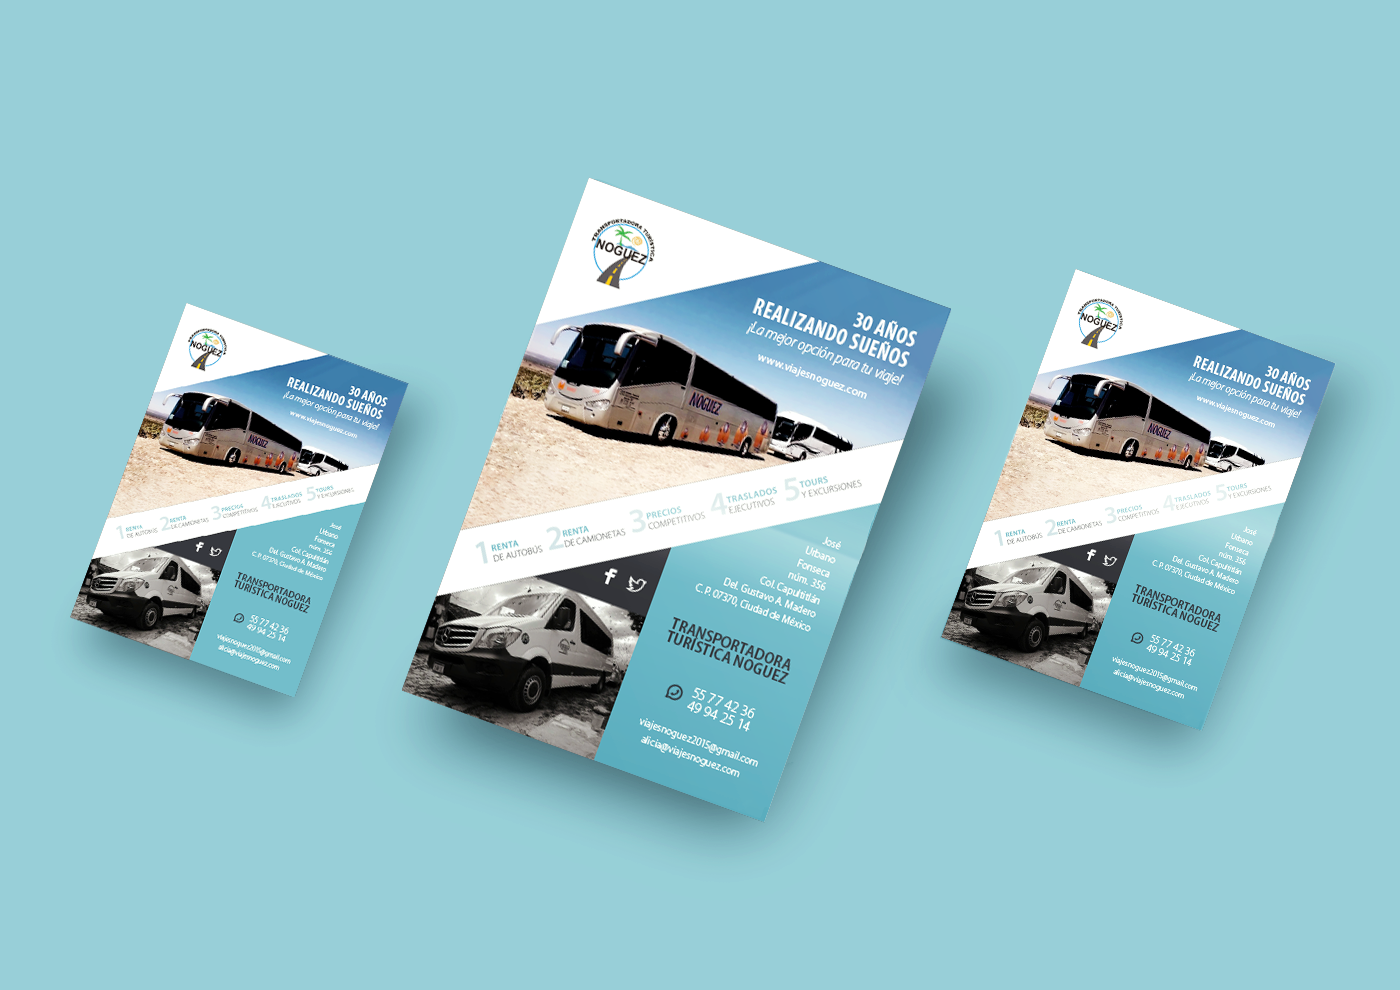 rediseño de imagen Tarjetas de Presentación folletos flyer agencia de viajes diseño